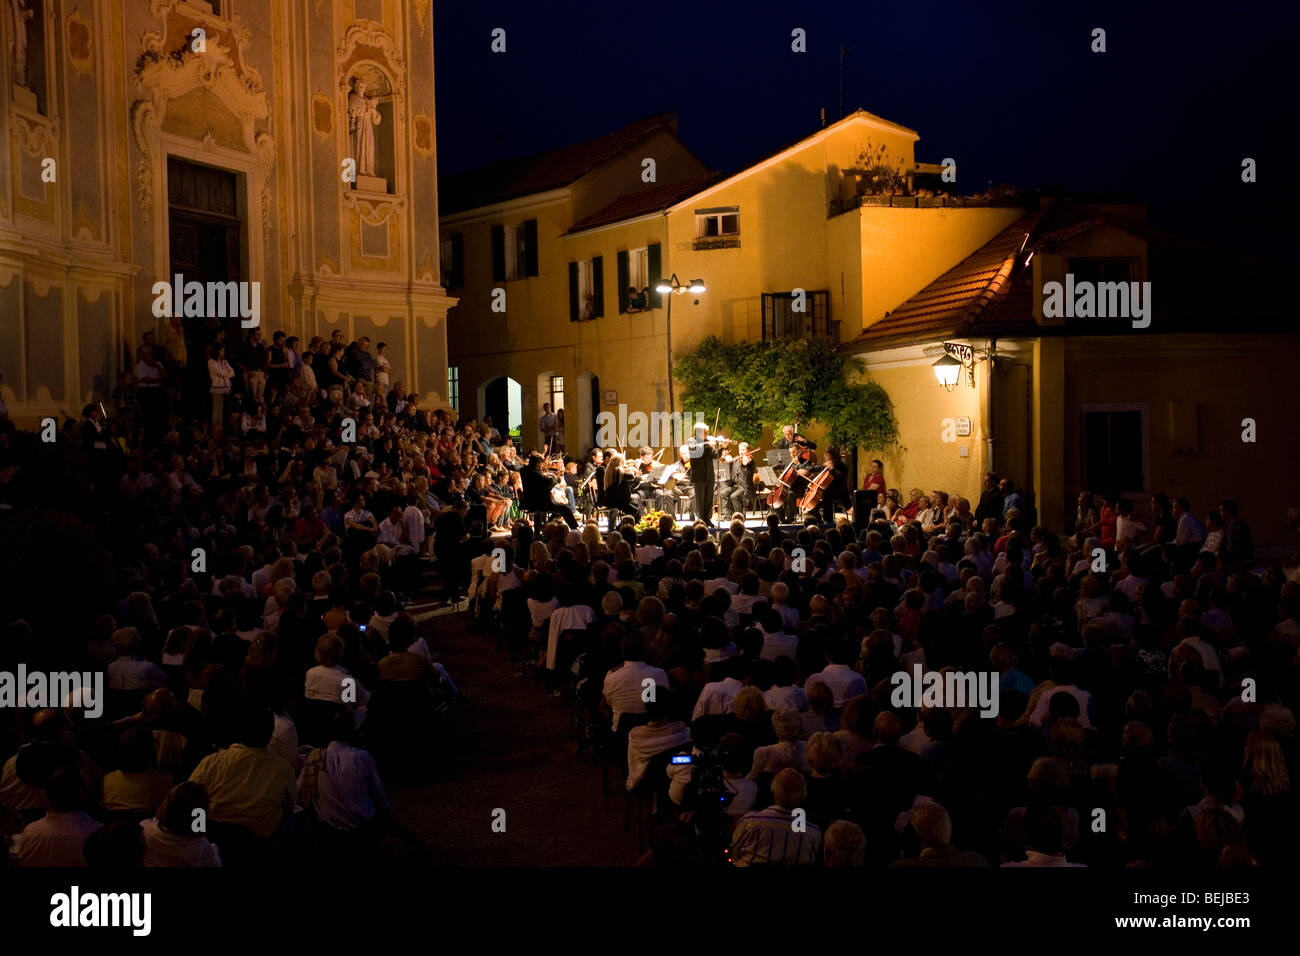 Violinist Uto Ughi in concert, Piazza dei Corallini square, Cervo, Imperia, Ligury, Italy Stock Photo